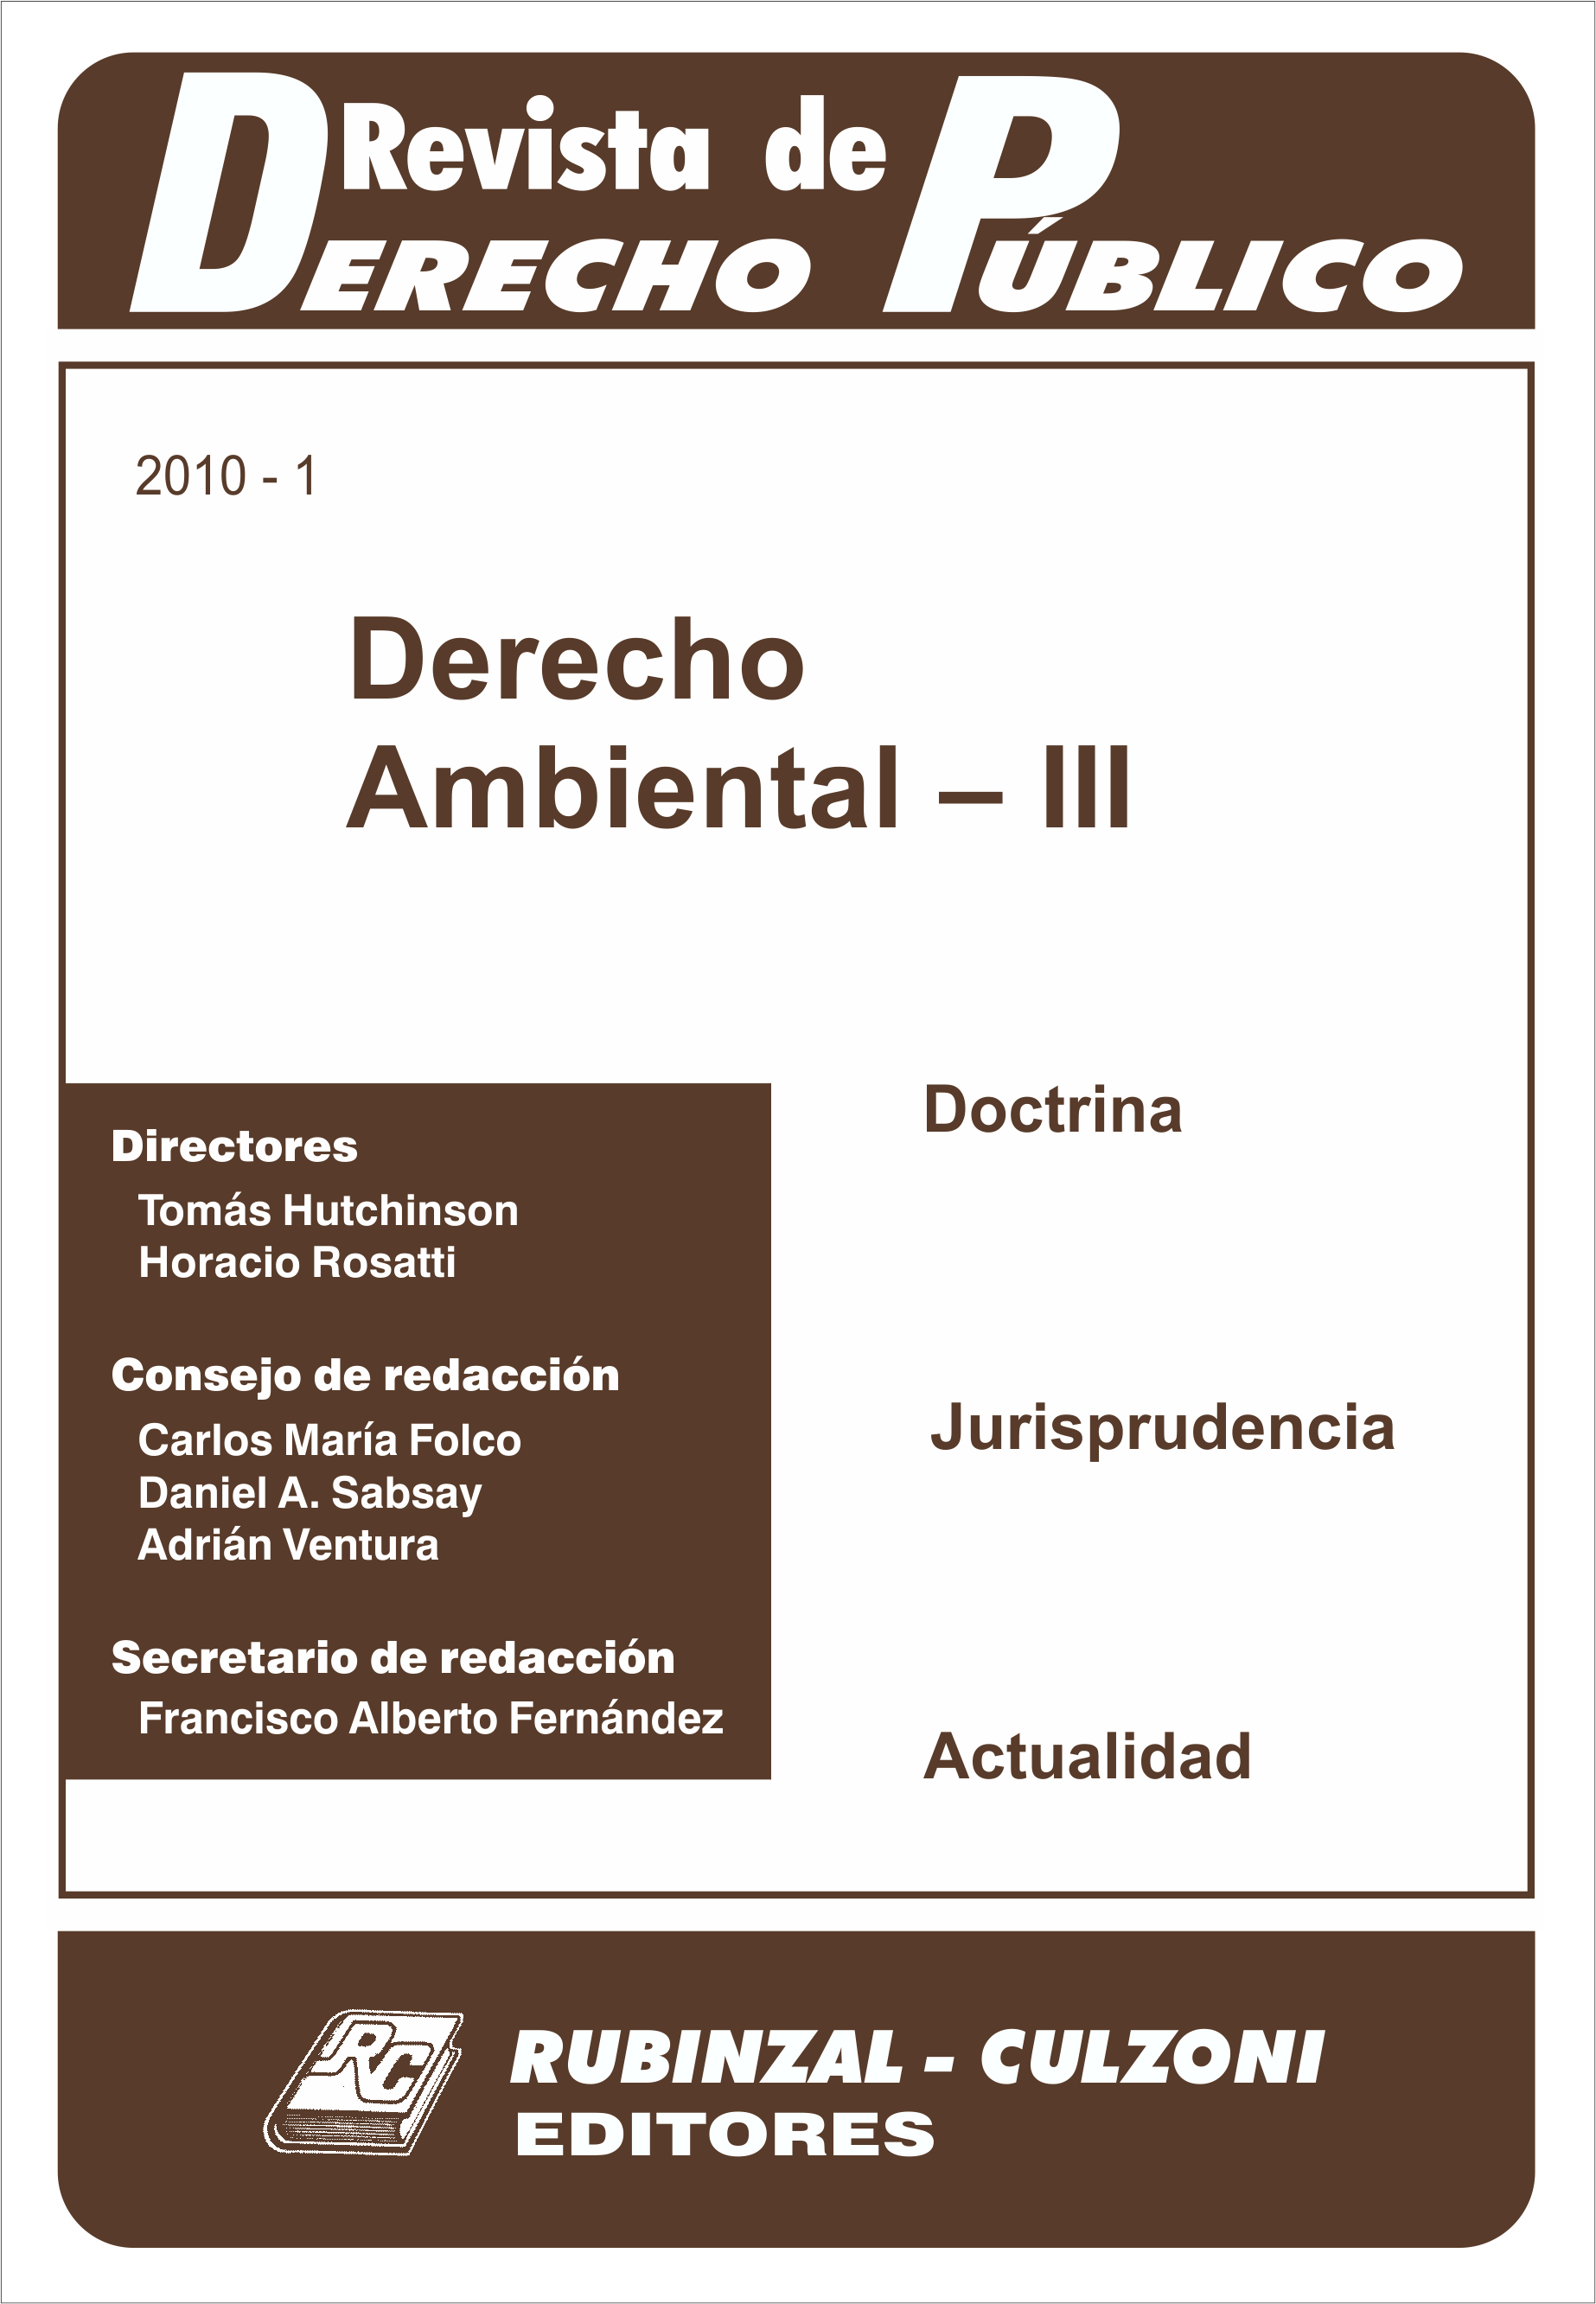 Revista de Derecho Público - Derecho Ambiental - III